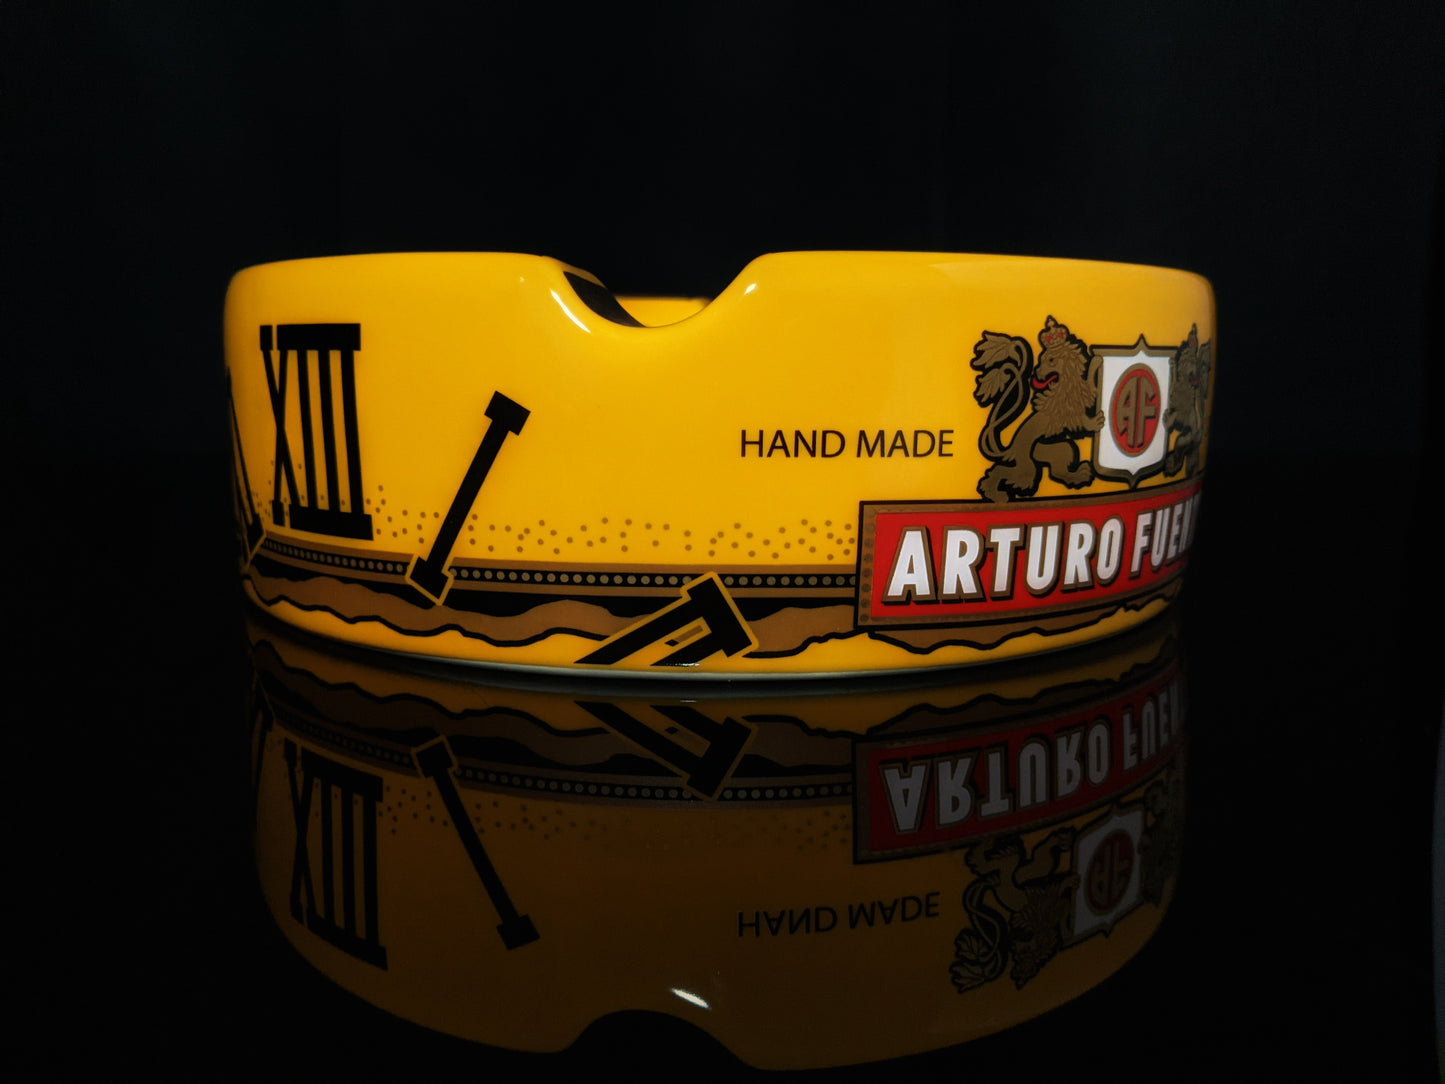 Arturo Fuente Yellow Ceramic Ashtray